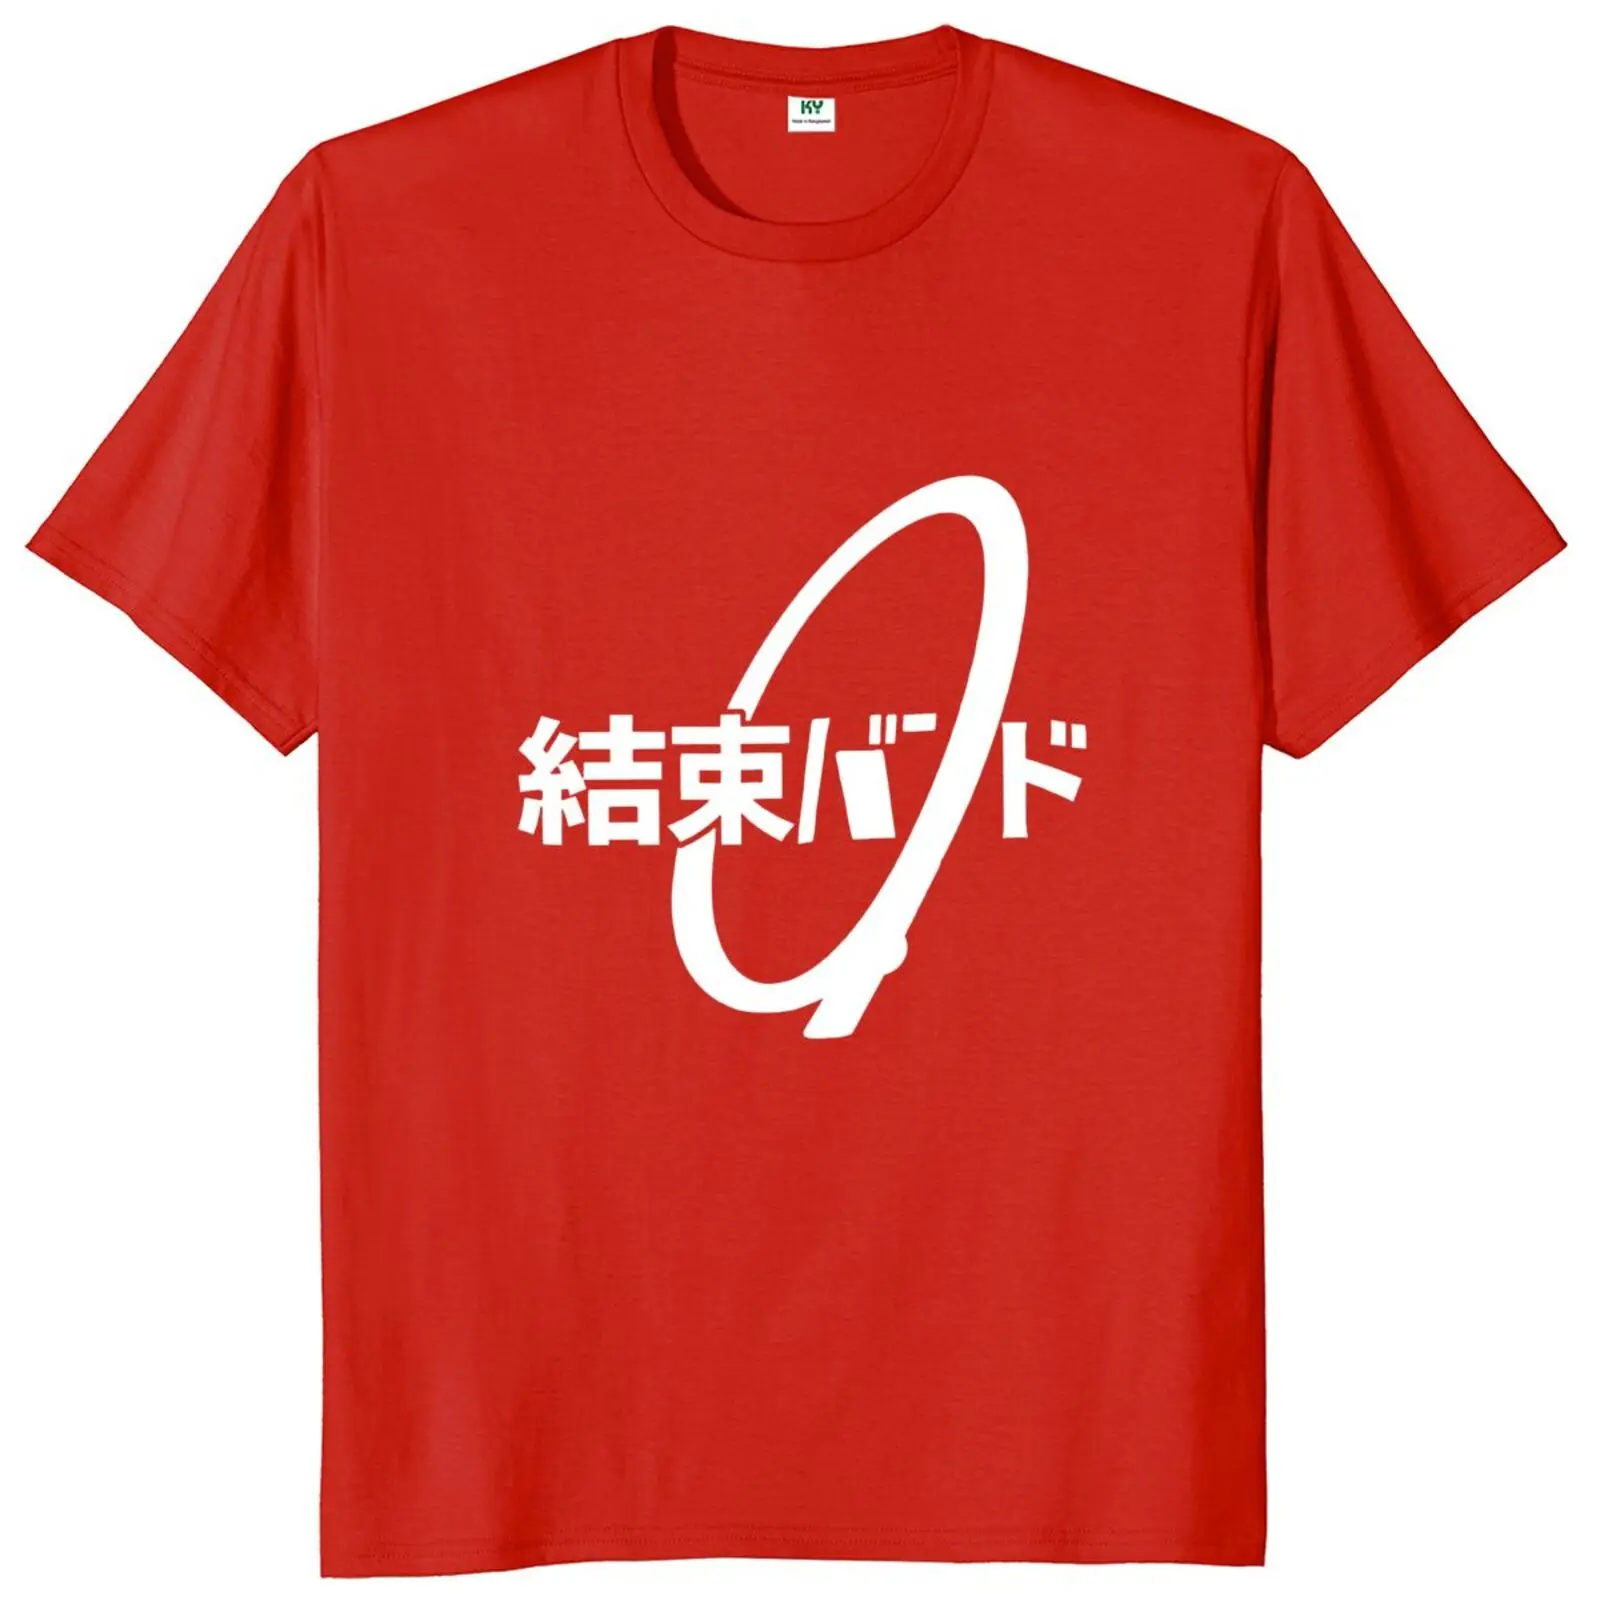 Kabel přivázat kandži hiragana kessoku pás kolébkový pás T košile 100% bavlna EU rozměr topy tričko